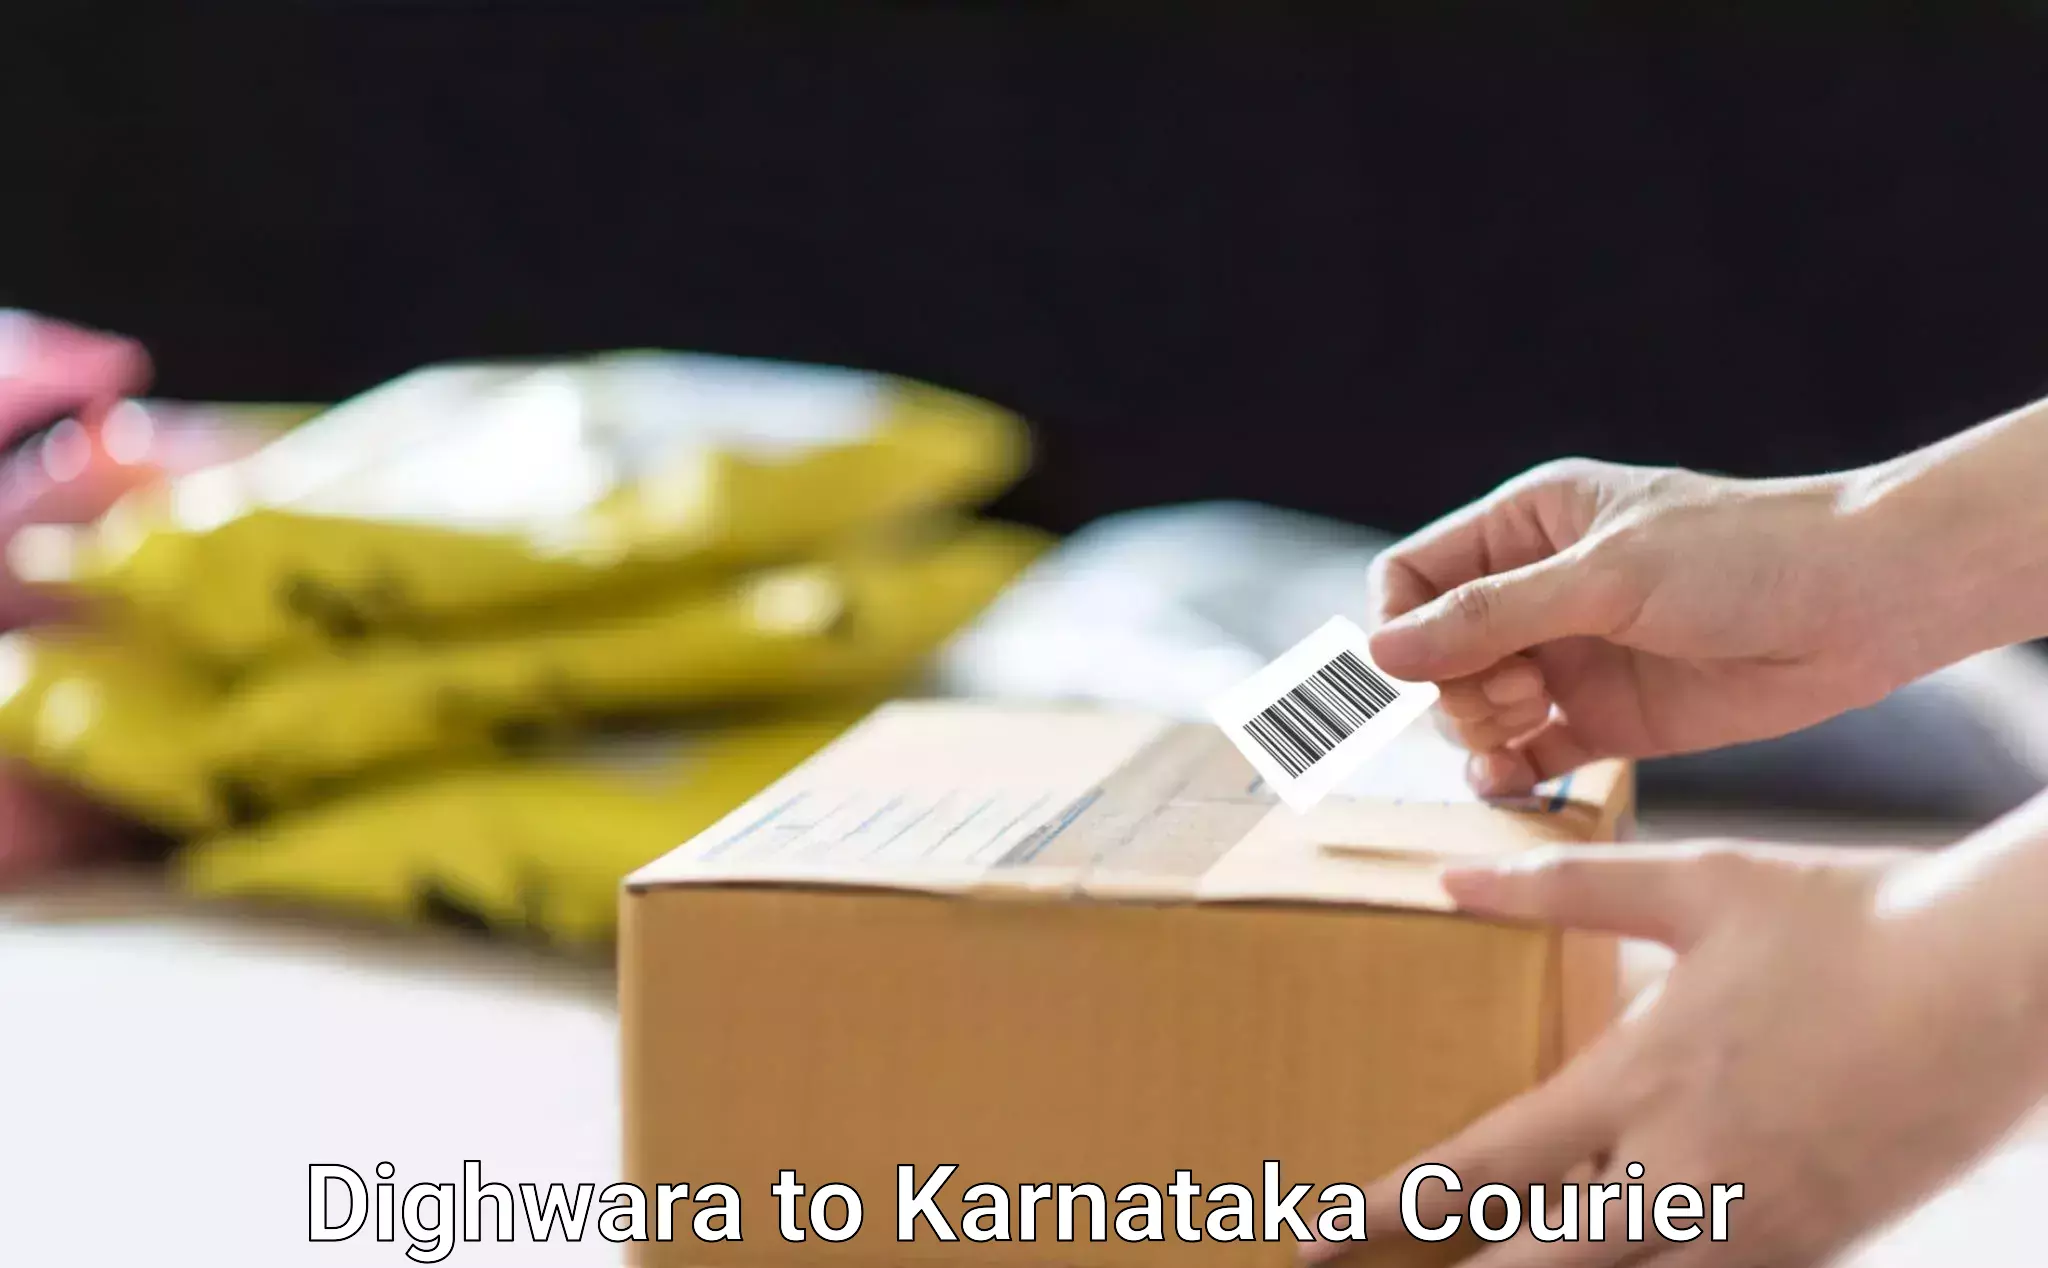 Personalized furniture moving Dighwara to Karnataka